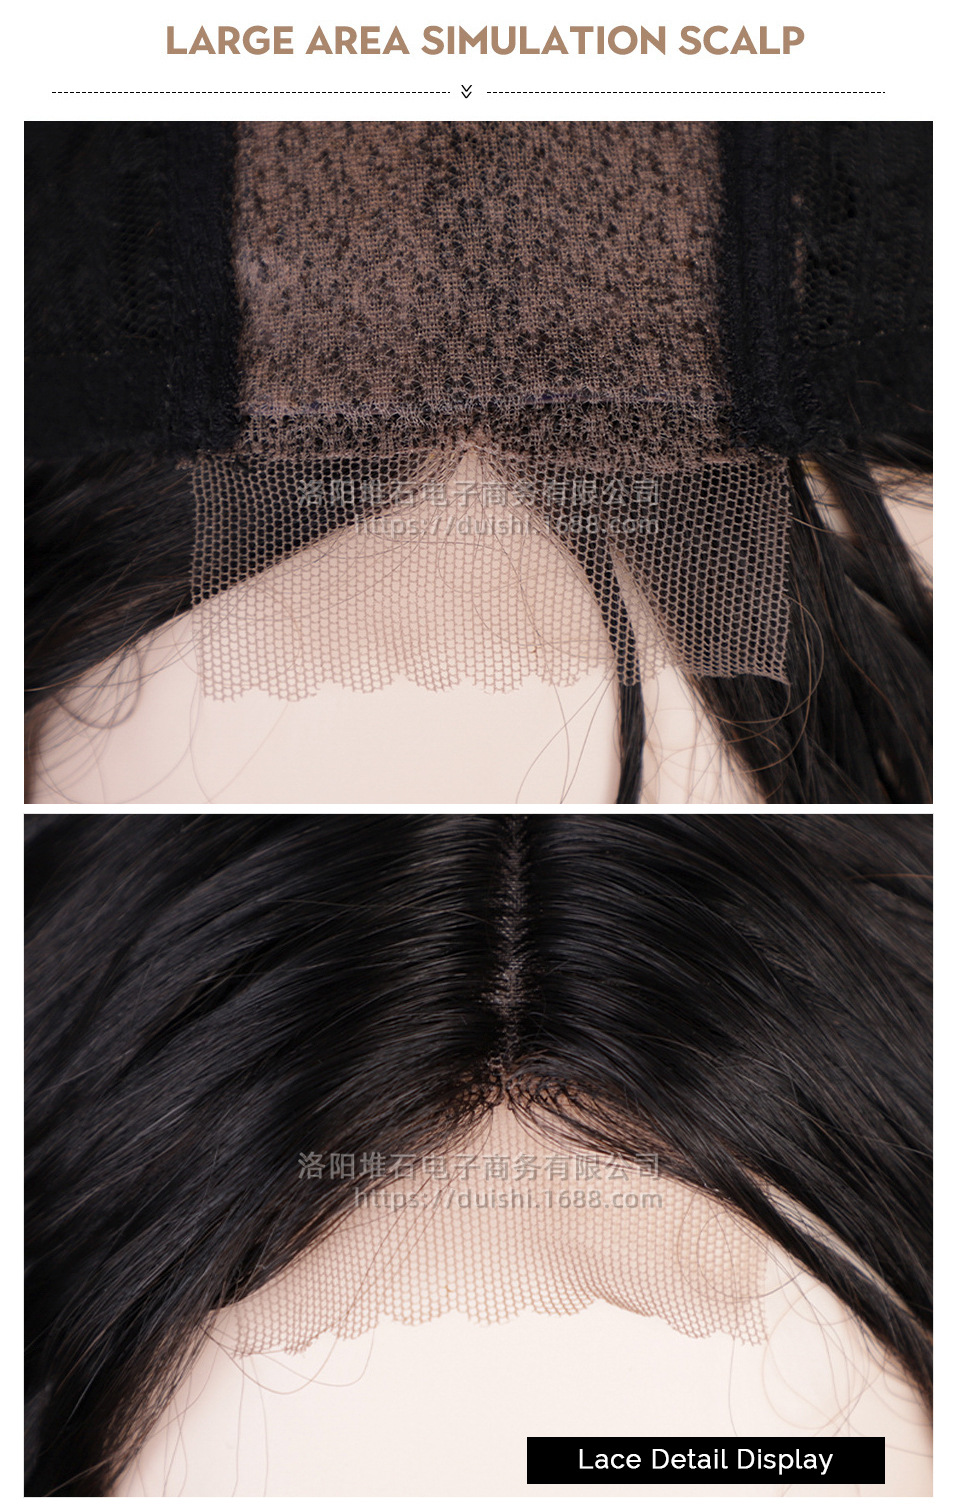 Europische und amerikanische Damenpercke kleine Spitze groe Welle langes lockiges Haar Percke Kopfbedeckungpicture11